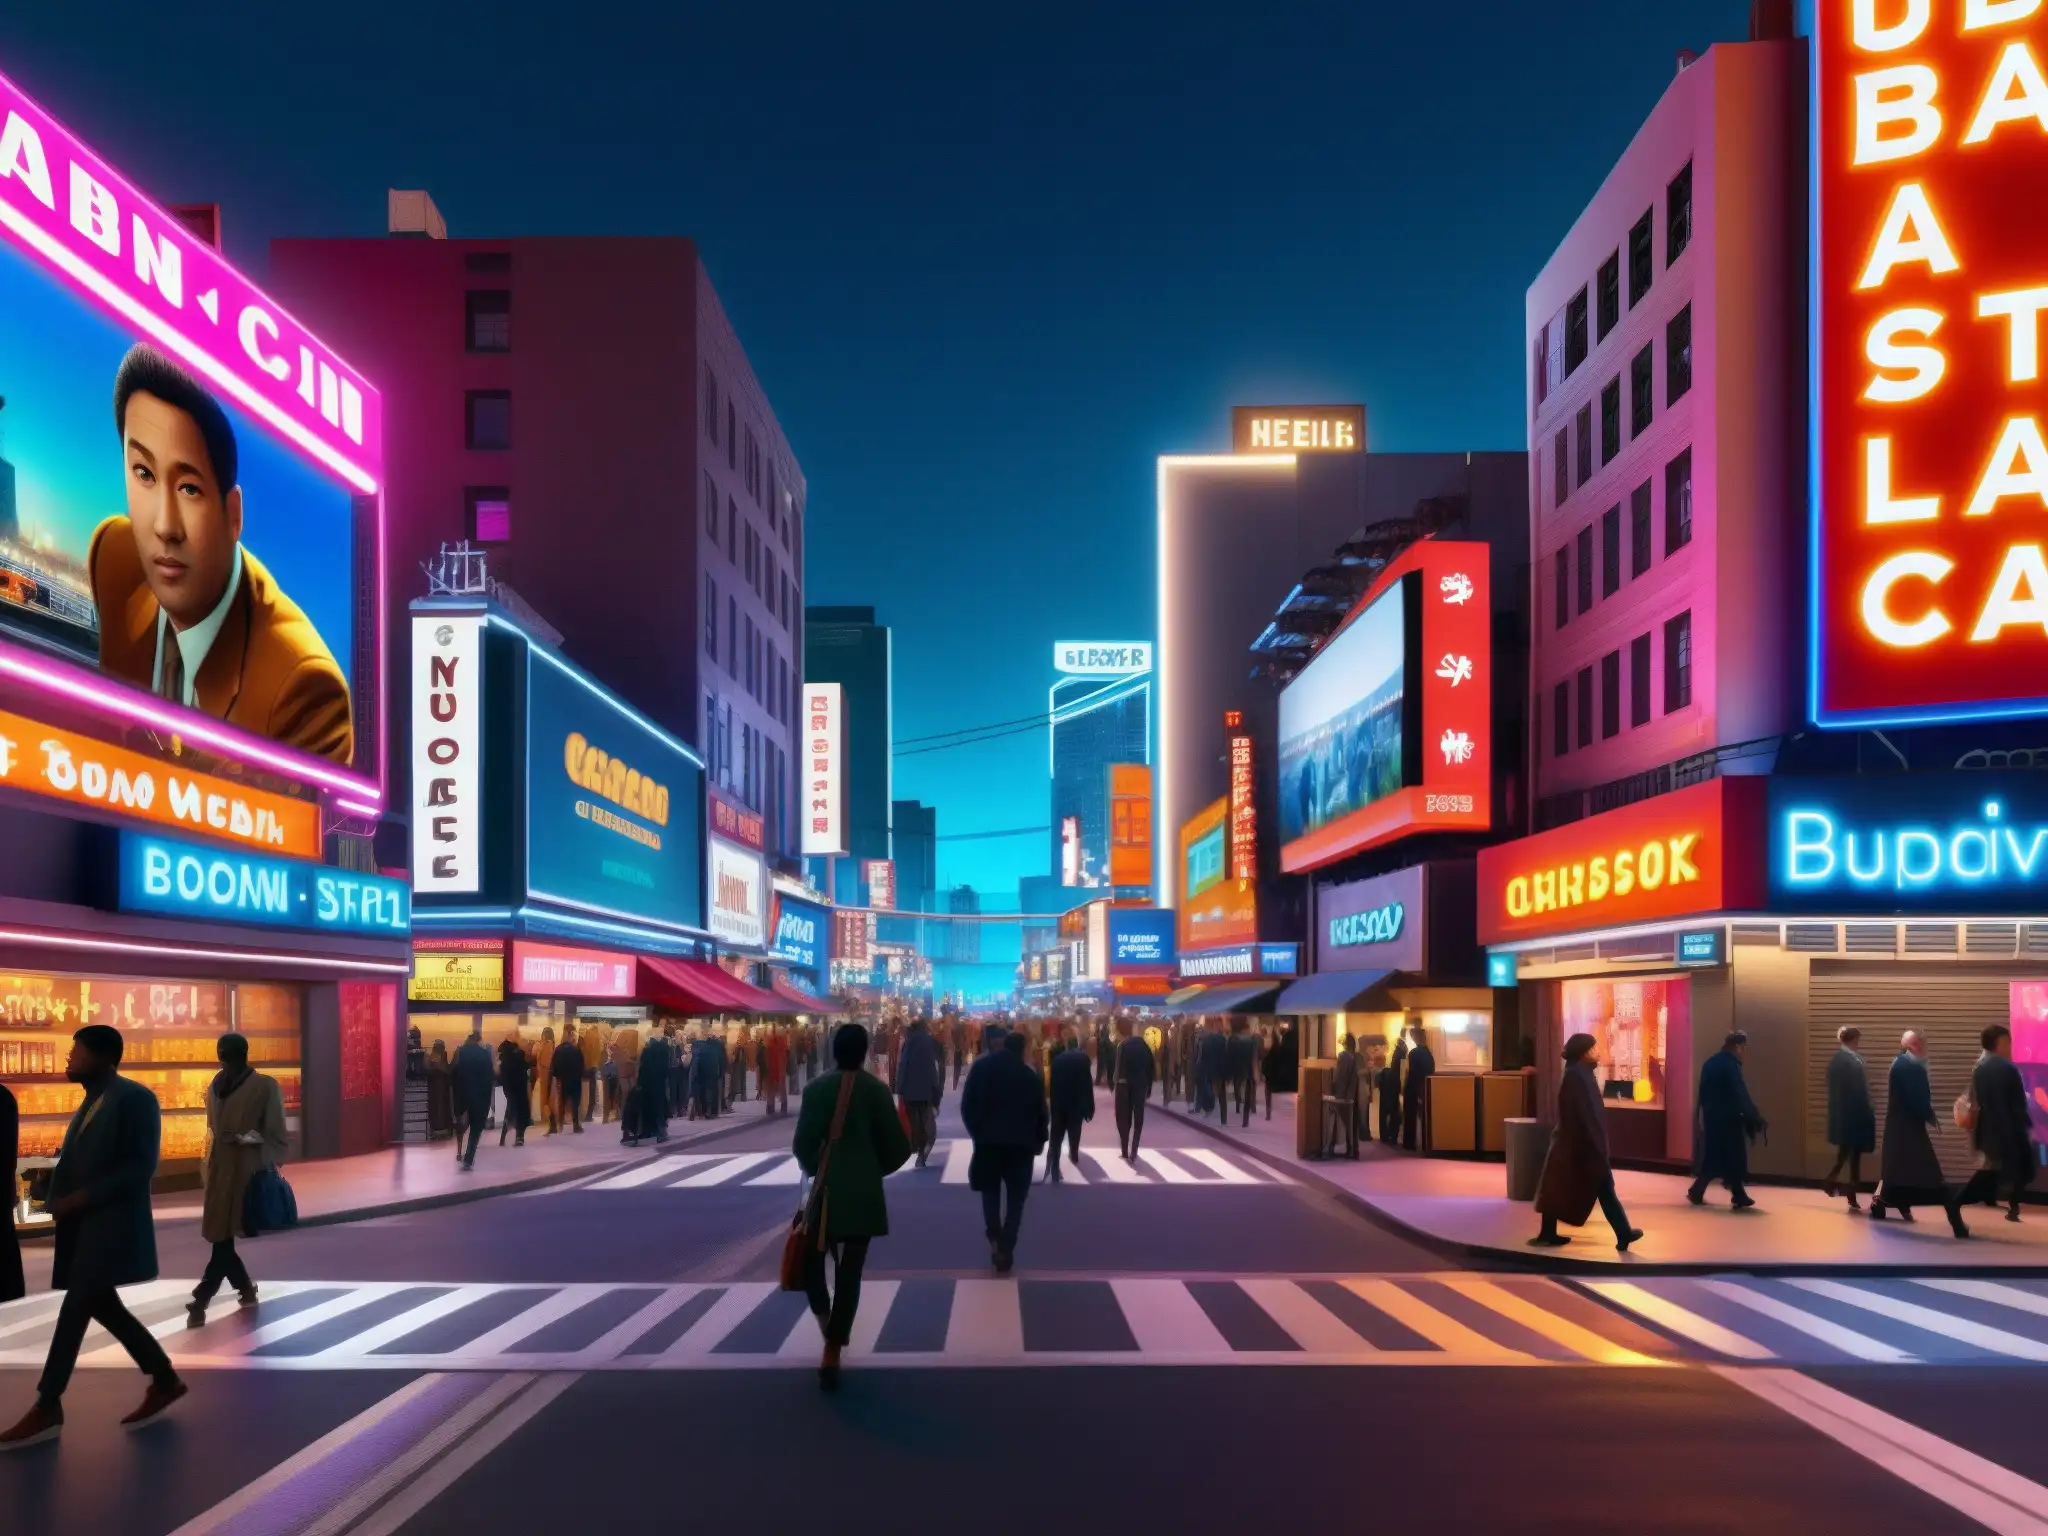 Una animada calle de la ciudad de noche, con letreros de neón y vallas publicitarias iluminando el paisaje urbano